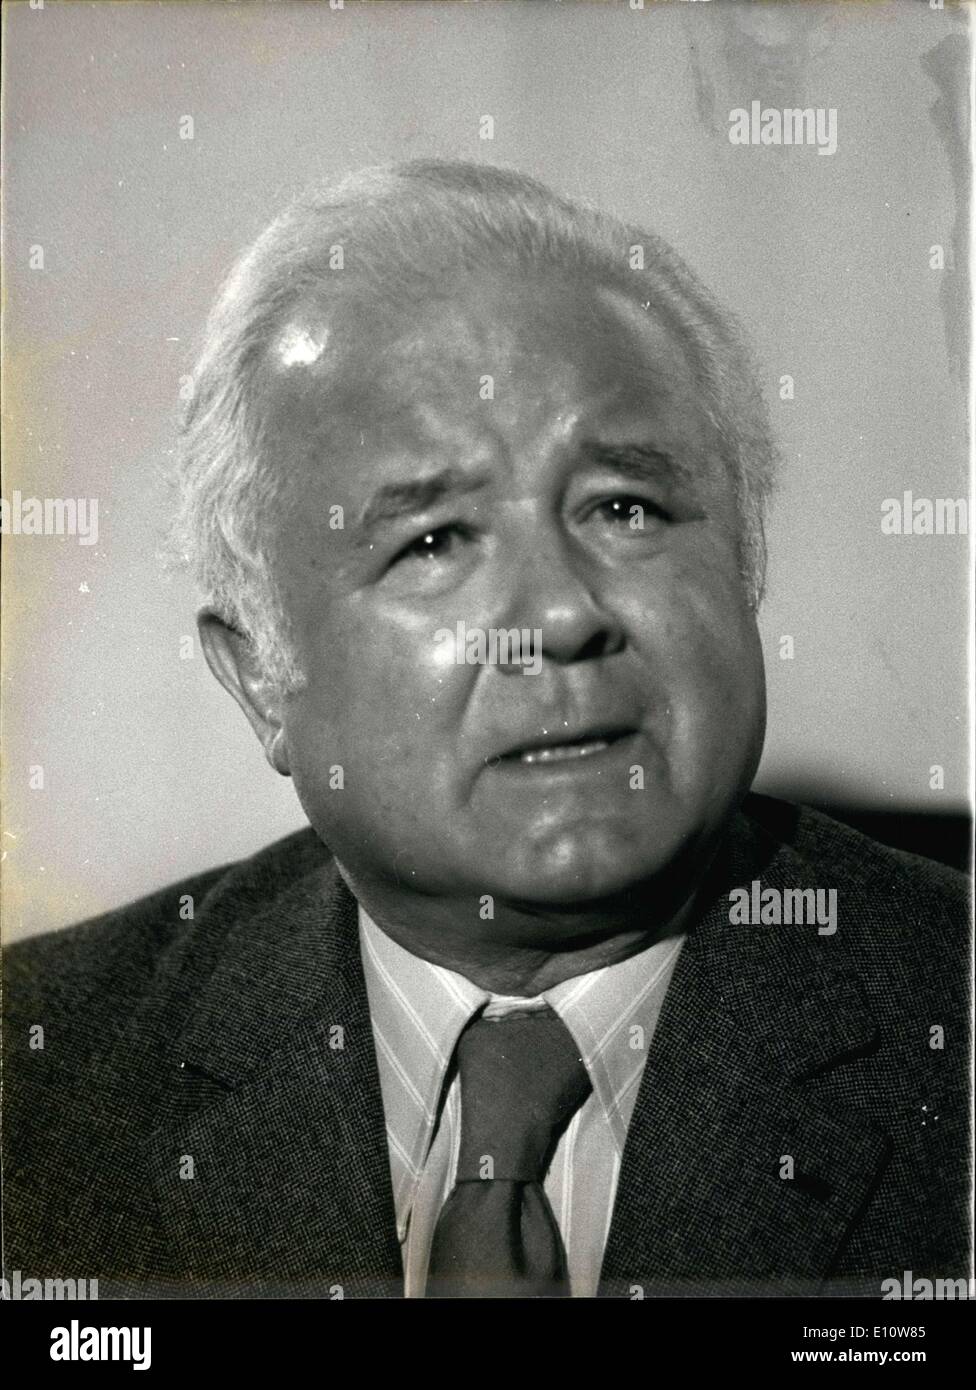 Apr. 16, 1974 - il sig. Emile Muller (nella foto), Sindaco di Mulhouse, è il candidato che il democratico il movimento socialista ha scelto di essere il loro candidato per le elezioni presidenziali. Egli ha tenuto una conferenza stampa questa mattina all'Assemblea nazionale. Foto Stock